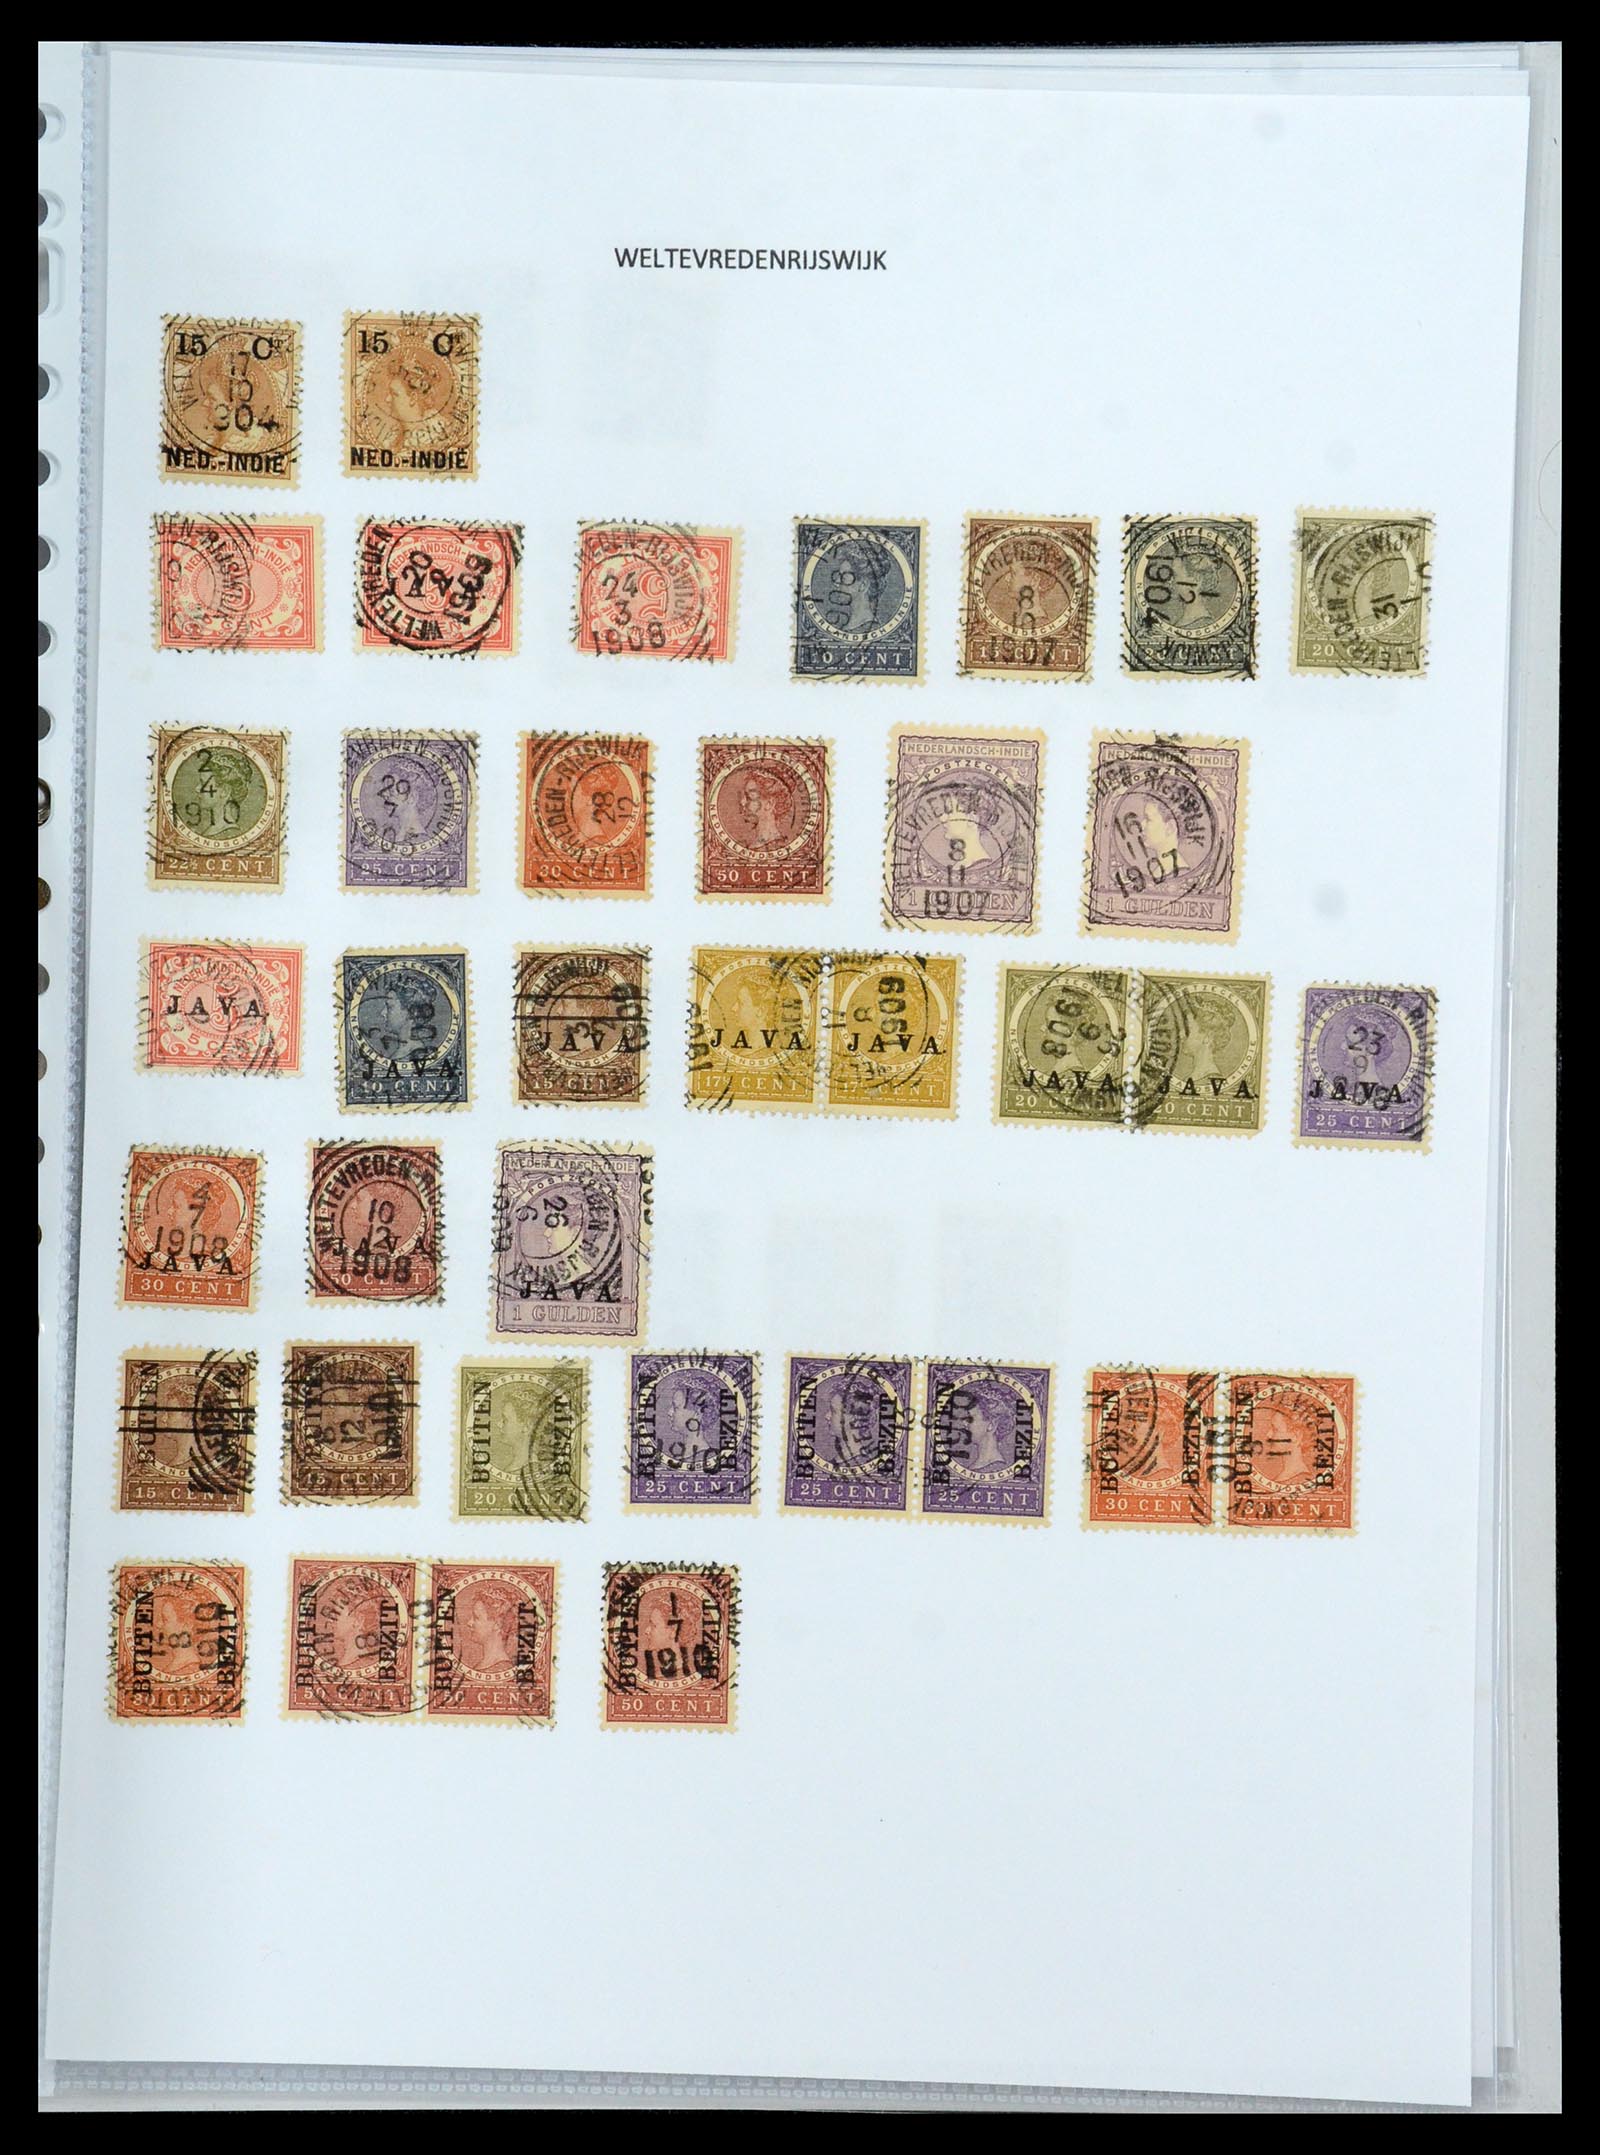 36432 221 - Postzegelverzameling 36432 Nederlands Indië vierkant stempels.